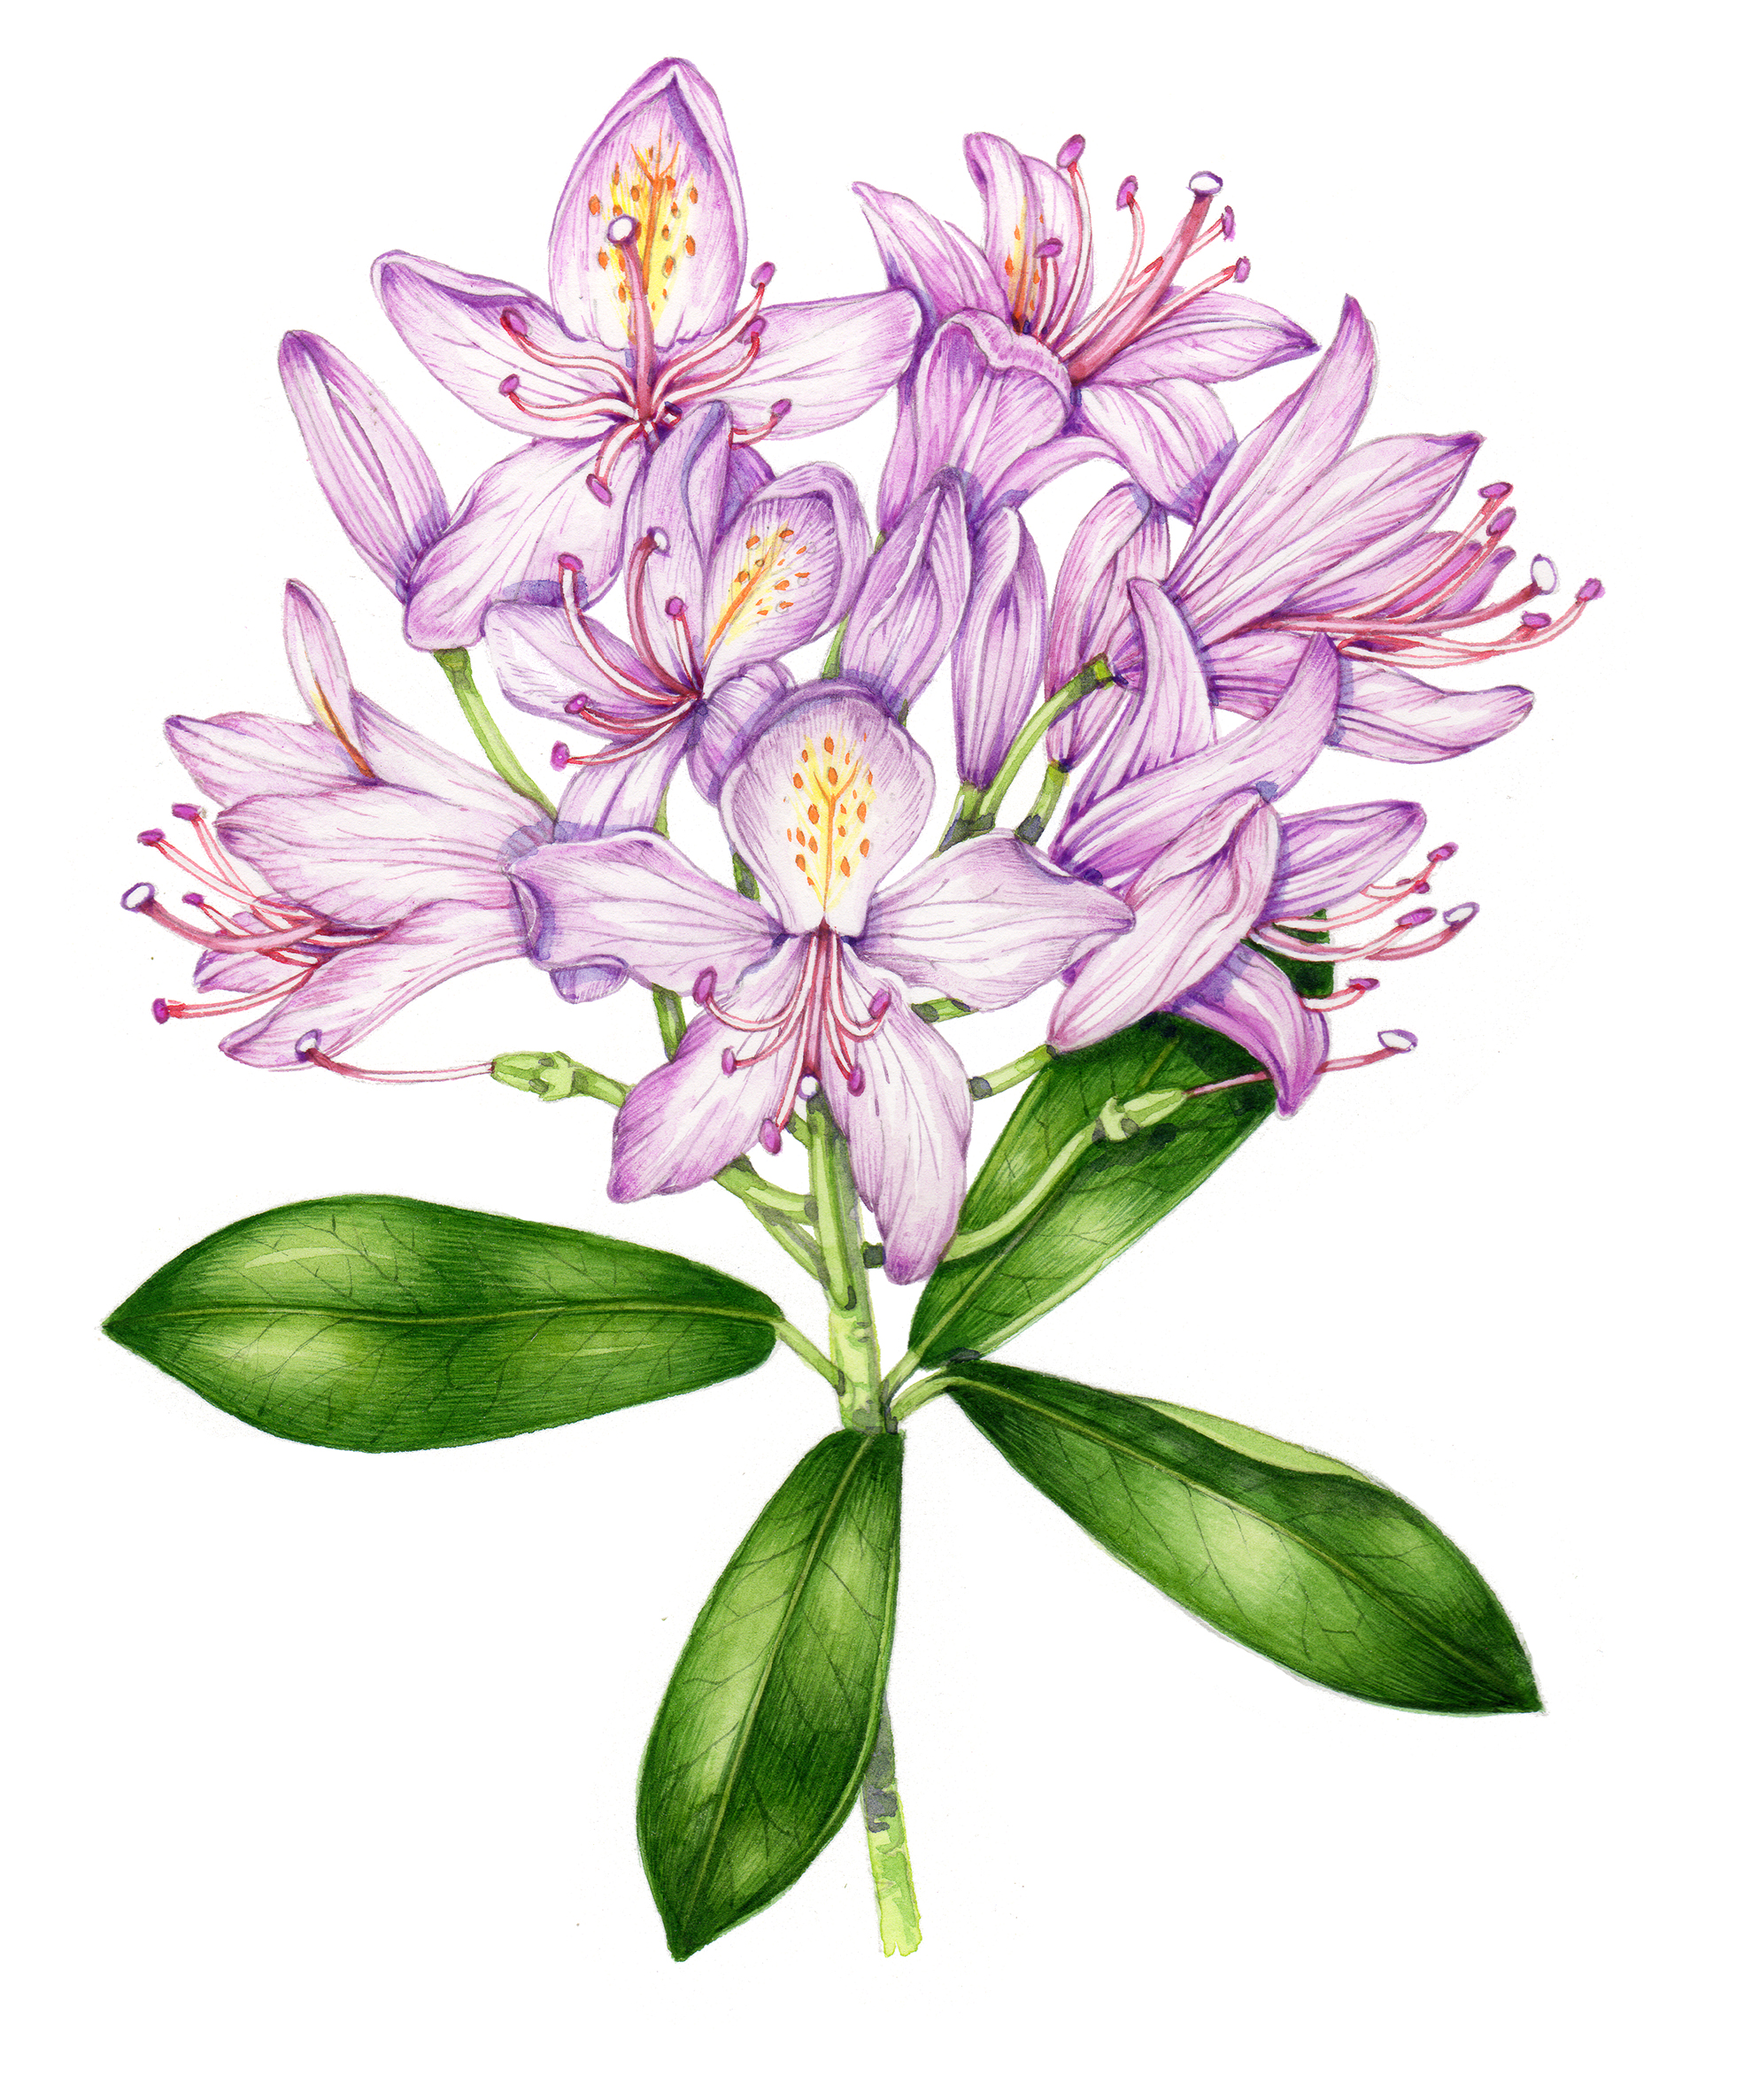 Rhododendron ponticum botanical illustration by Lizzie Harper - Lizzie ...